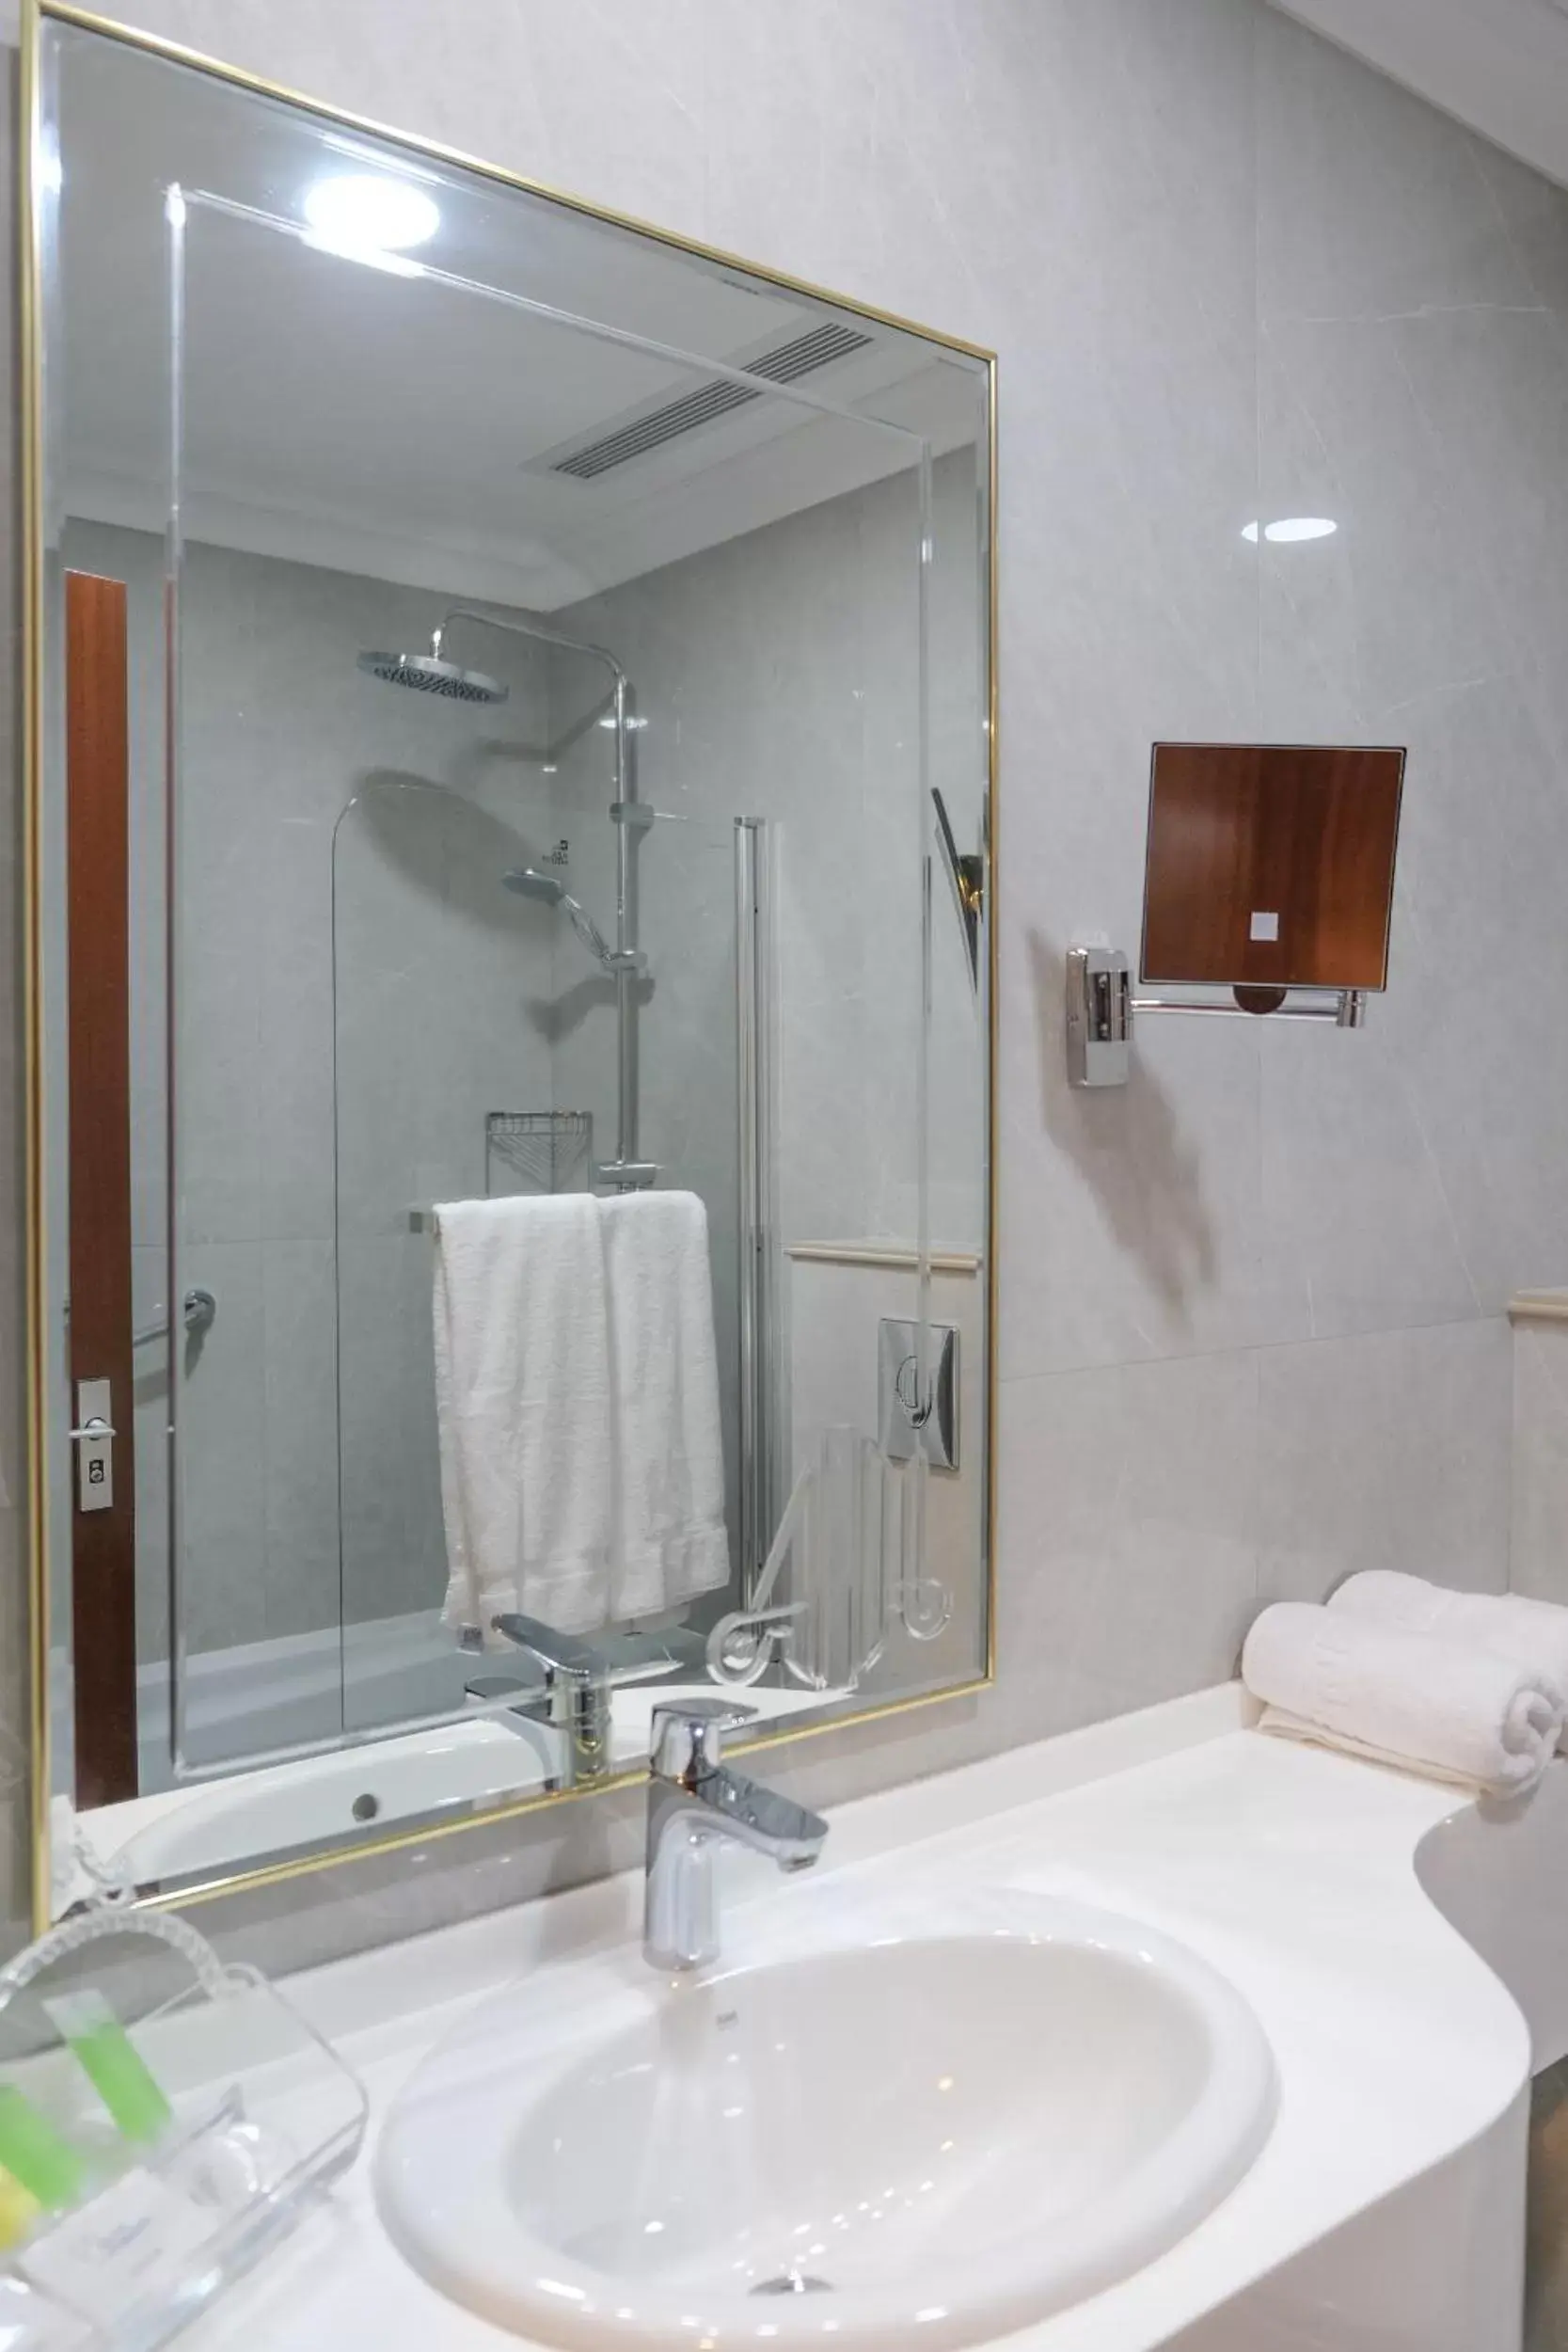 Bathroom in Amman International Hotel